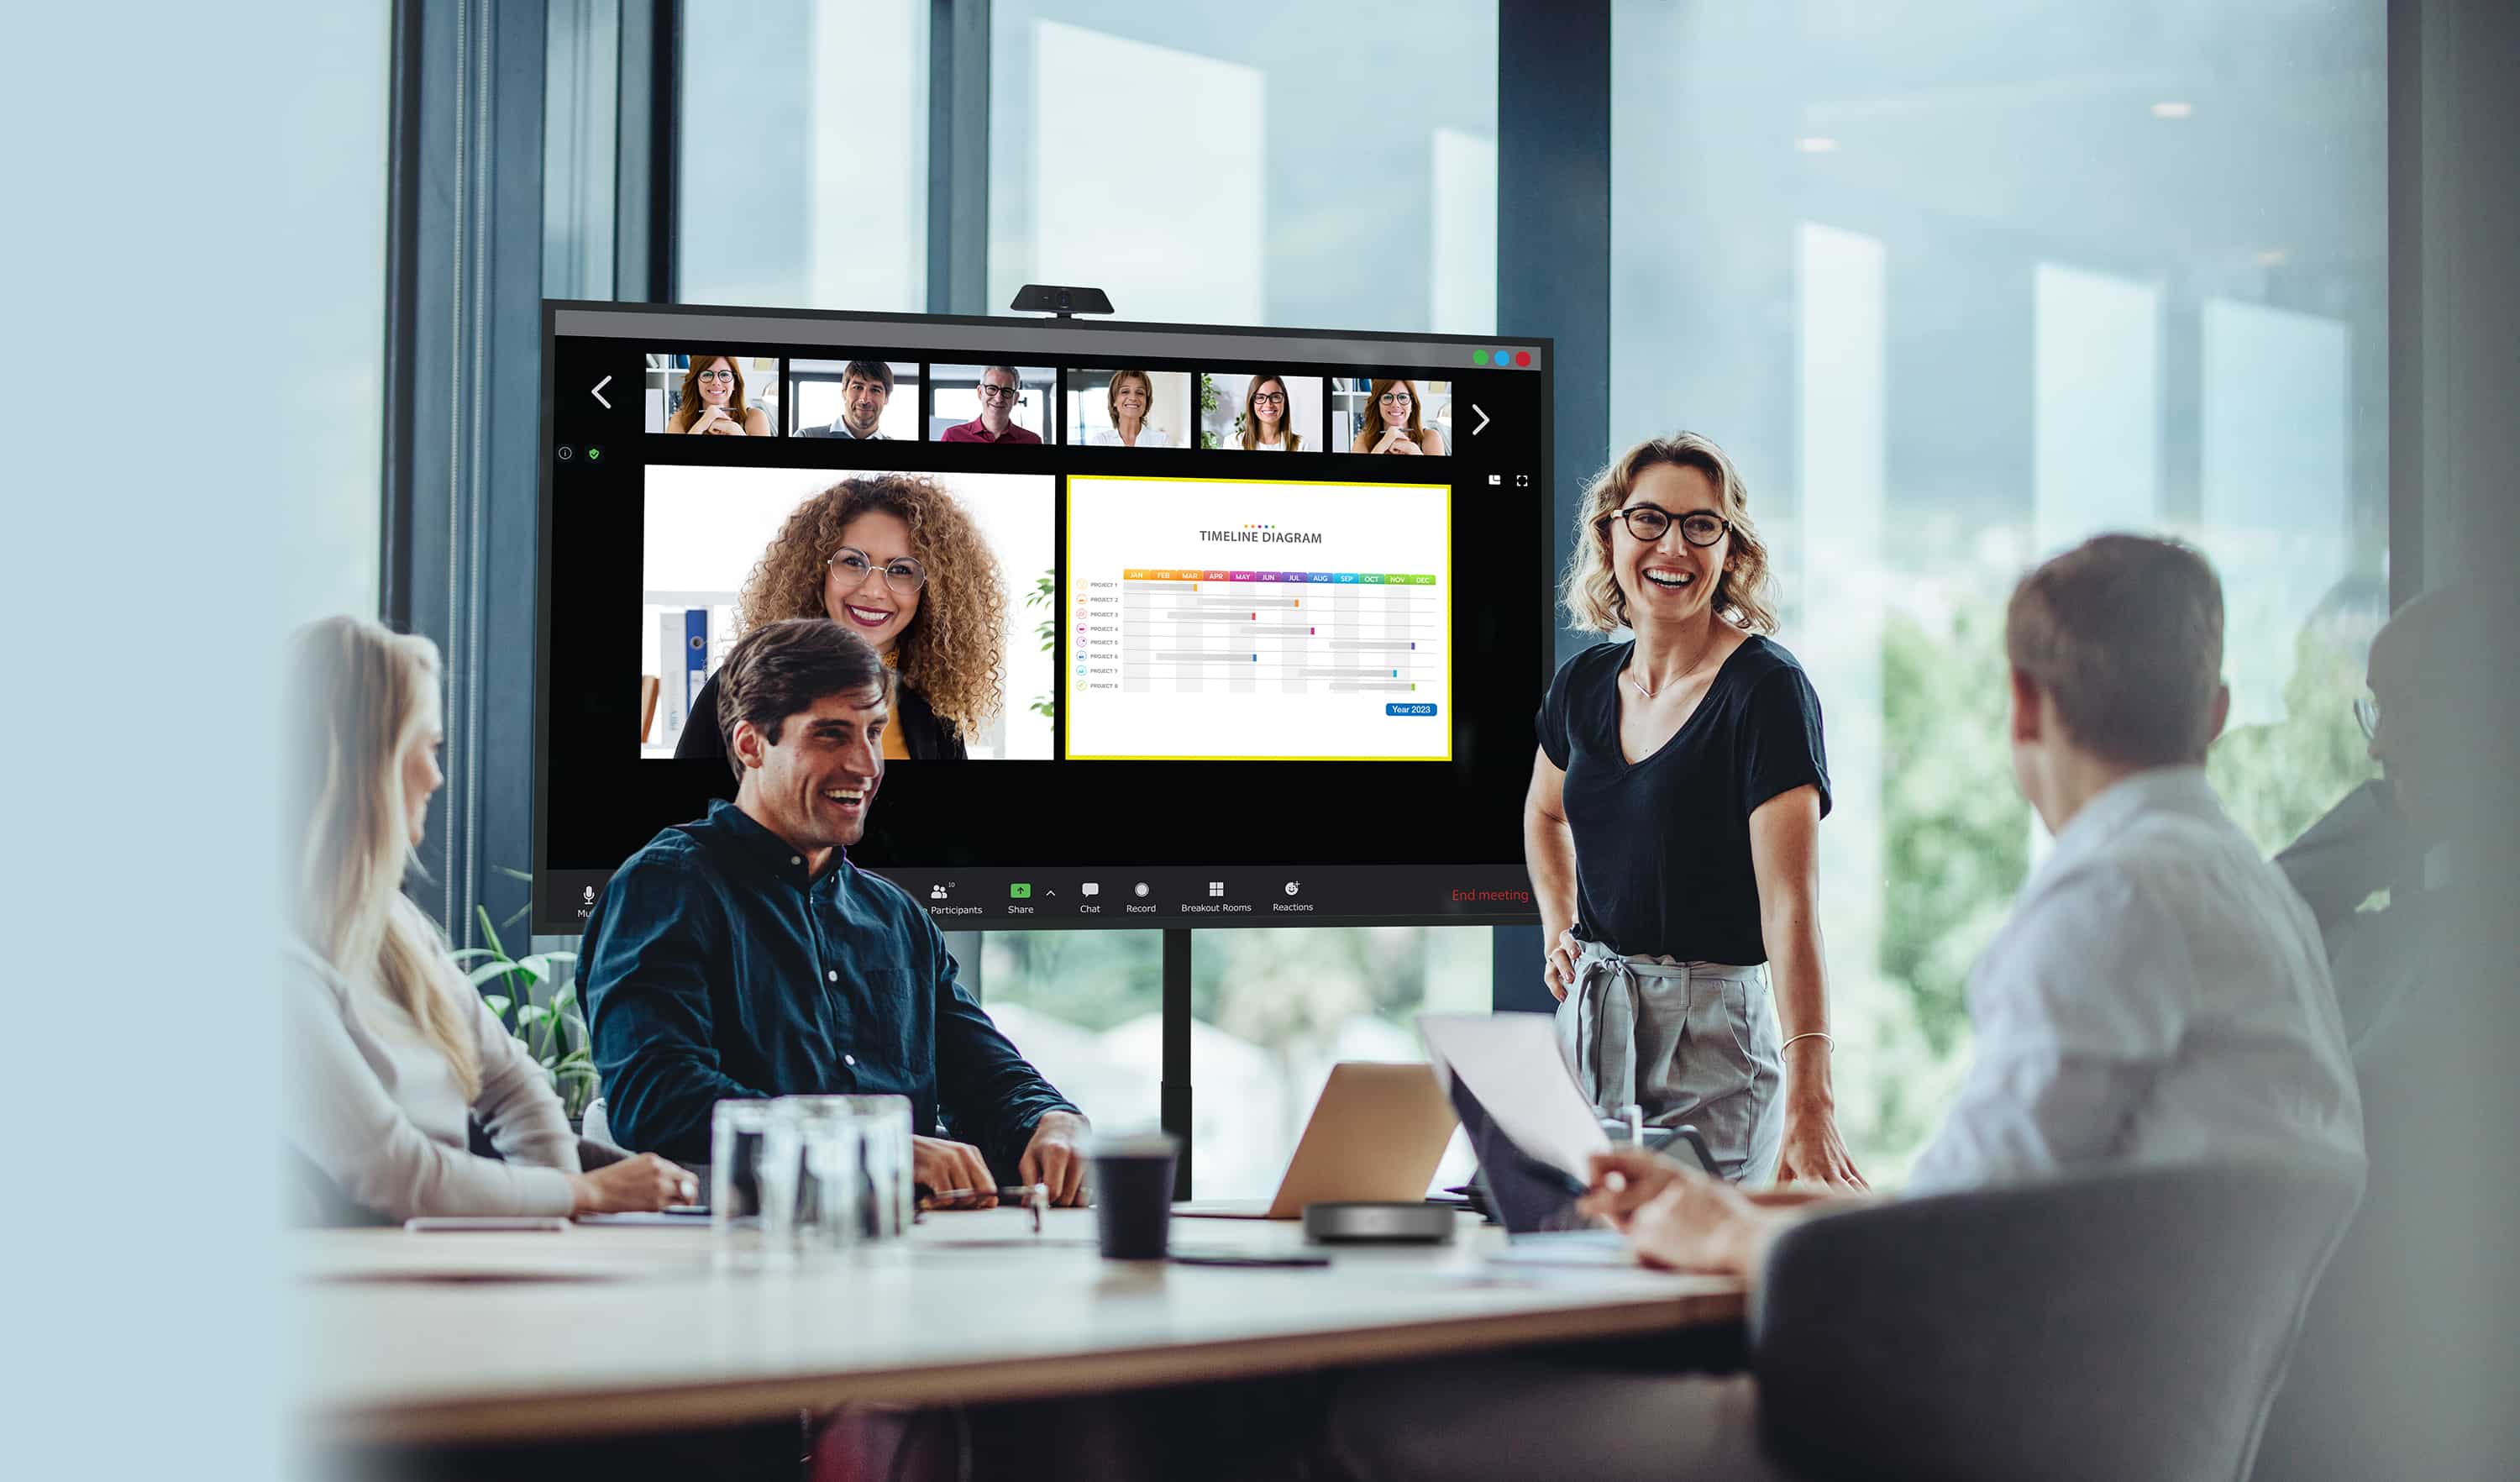 Partnerzy biznesowi prowadzący spotkanie z niektórymi pracownikami fizycznie obecnymi i patrzącymi na monitor Optoma serii N, podczas gdy ich zdalni koledzy są pokazywani na ekranie wraz z treściami, które udostępniają.